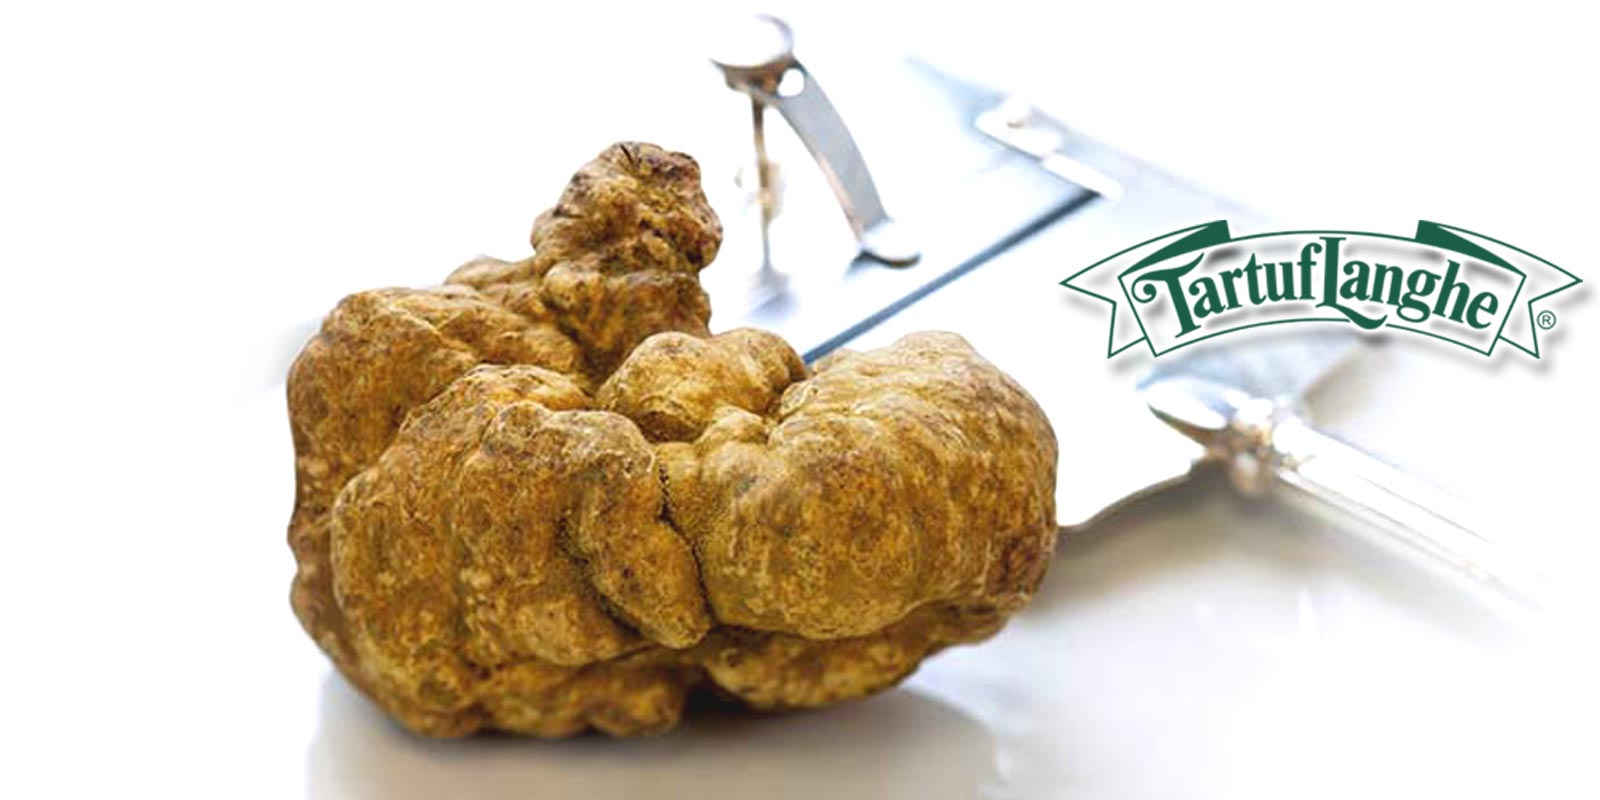 Produk Tartuflanghe Sejak tahun 1968, Tartuflanghe telah memproduksi dan mendistribusikan produk truffle dan truffle. Mereka dicirikan oleh rasa dan kualitas produksi yang tinggi.